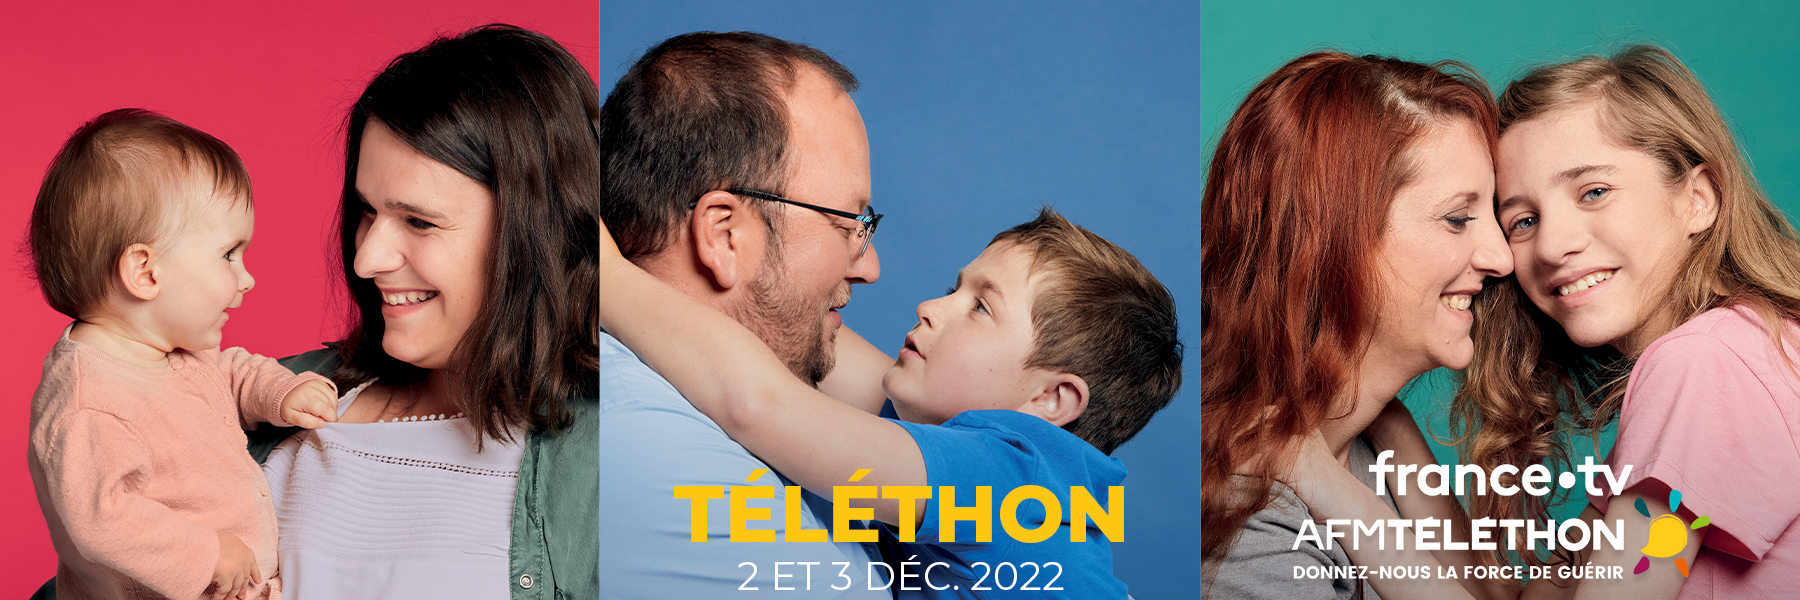 Téléthon 2 et 3 décembre 2022